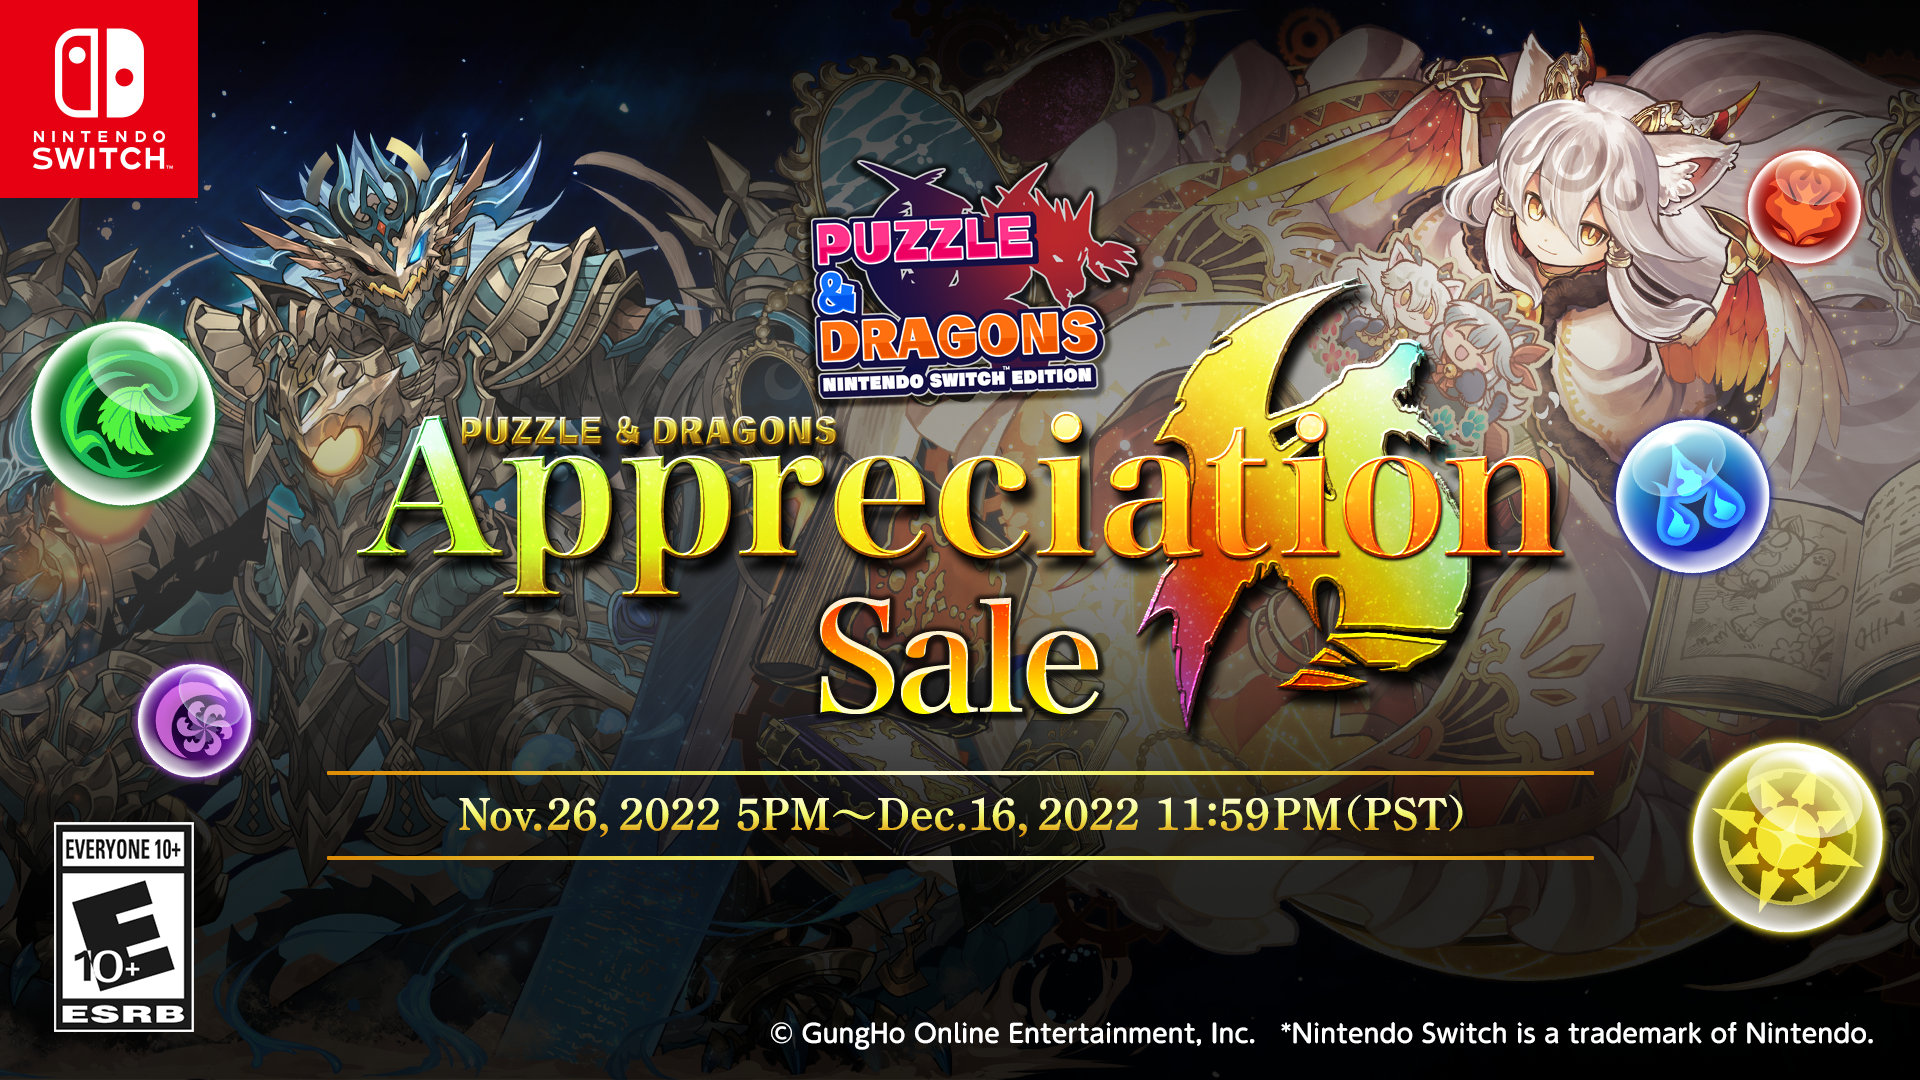 PUZZLE & DRAGONS Appreciation Sale